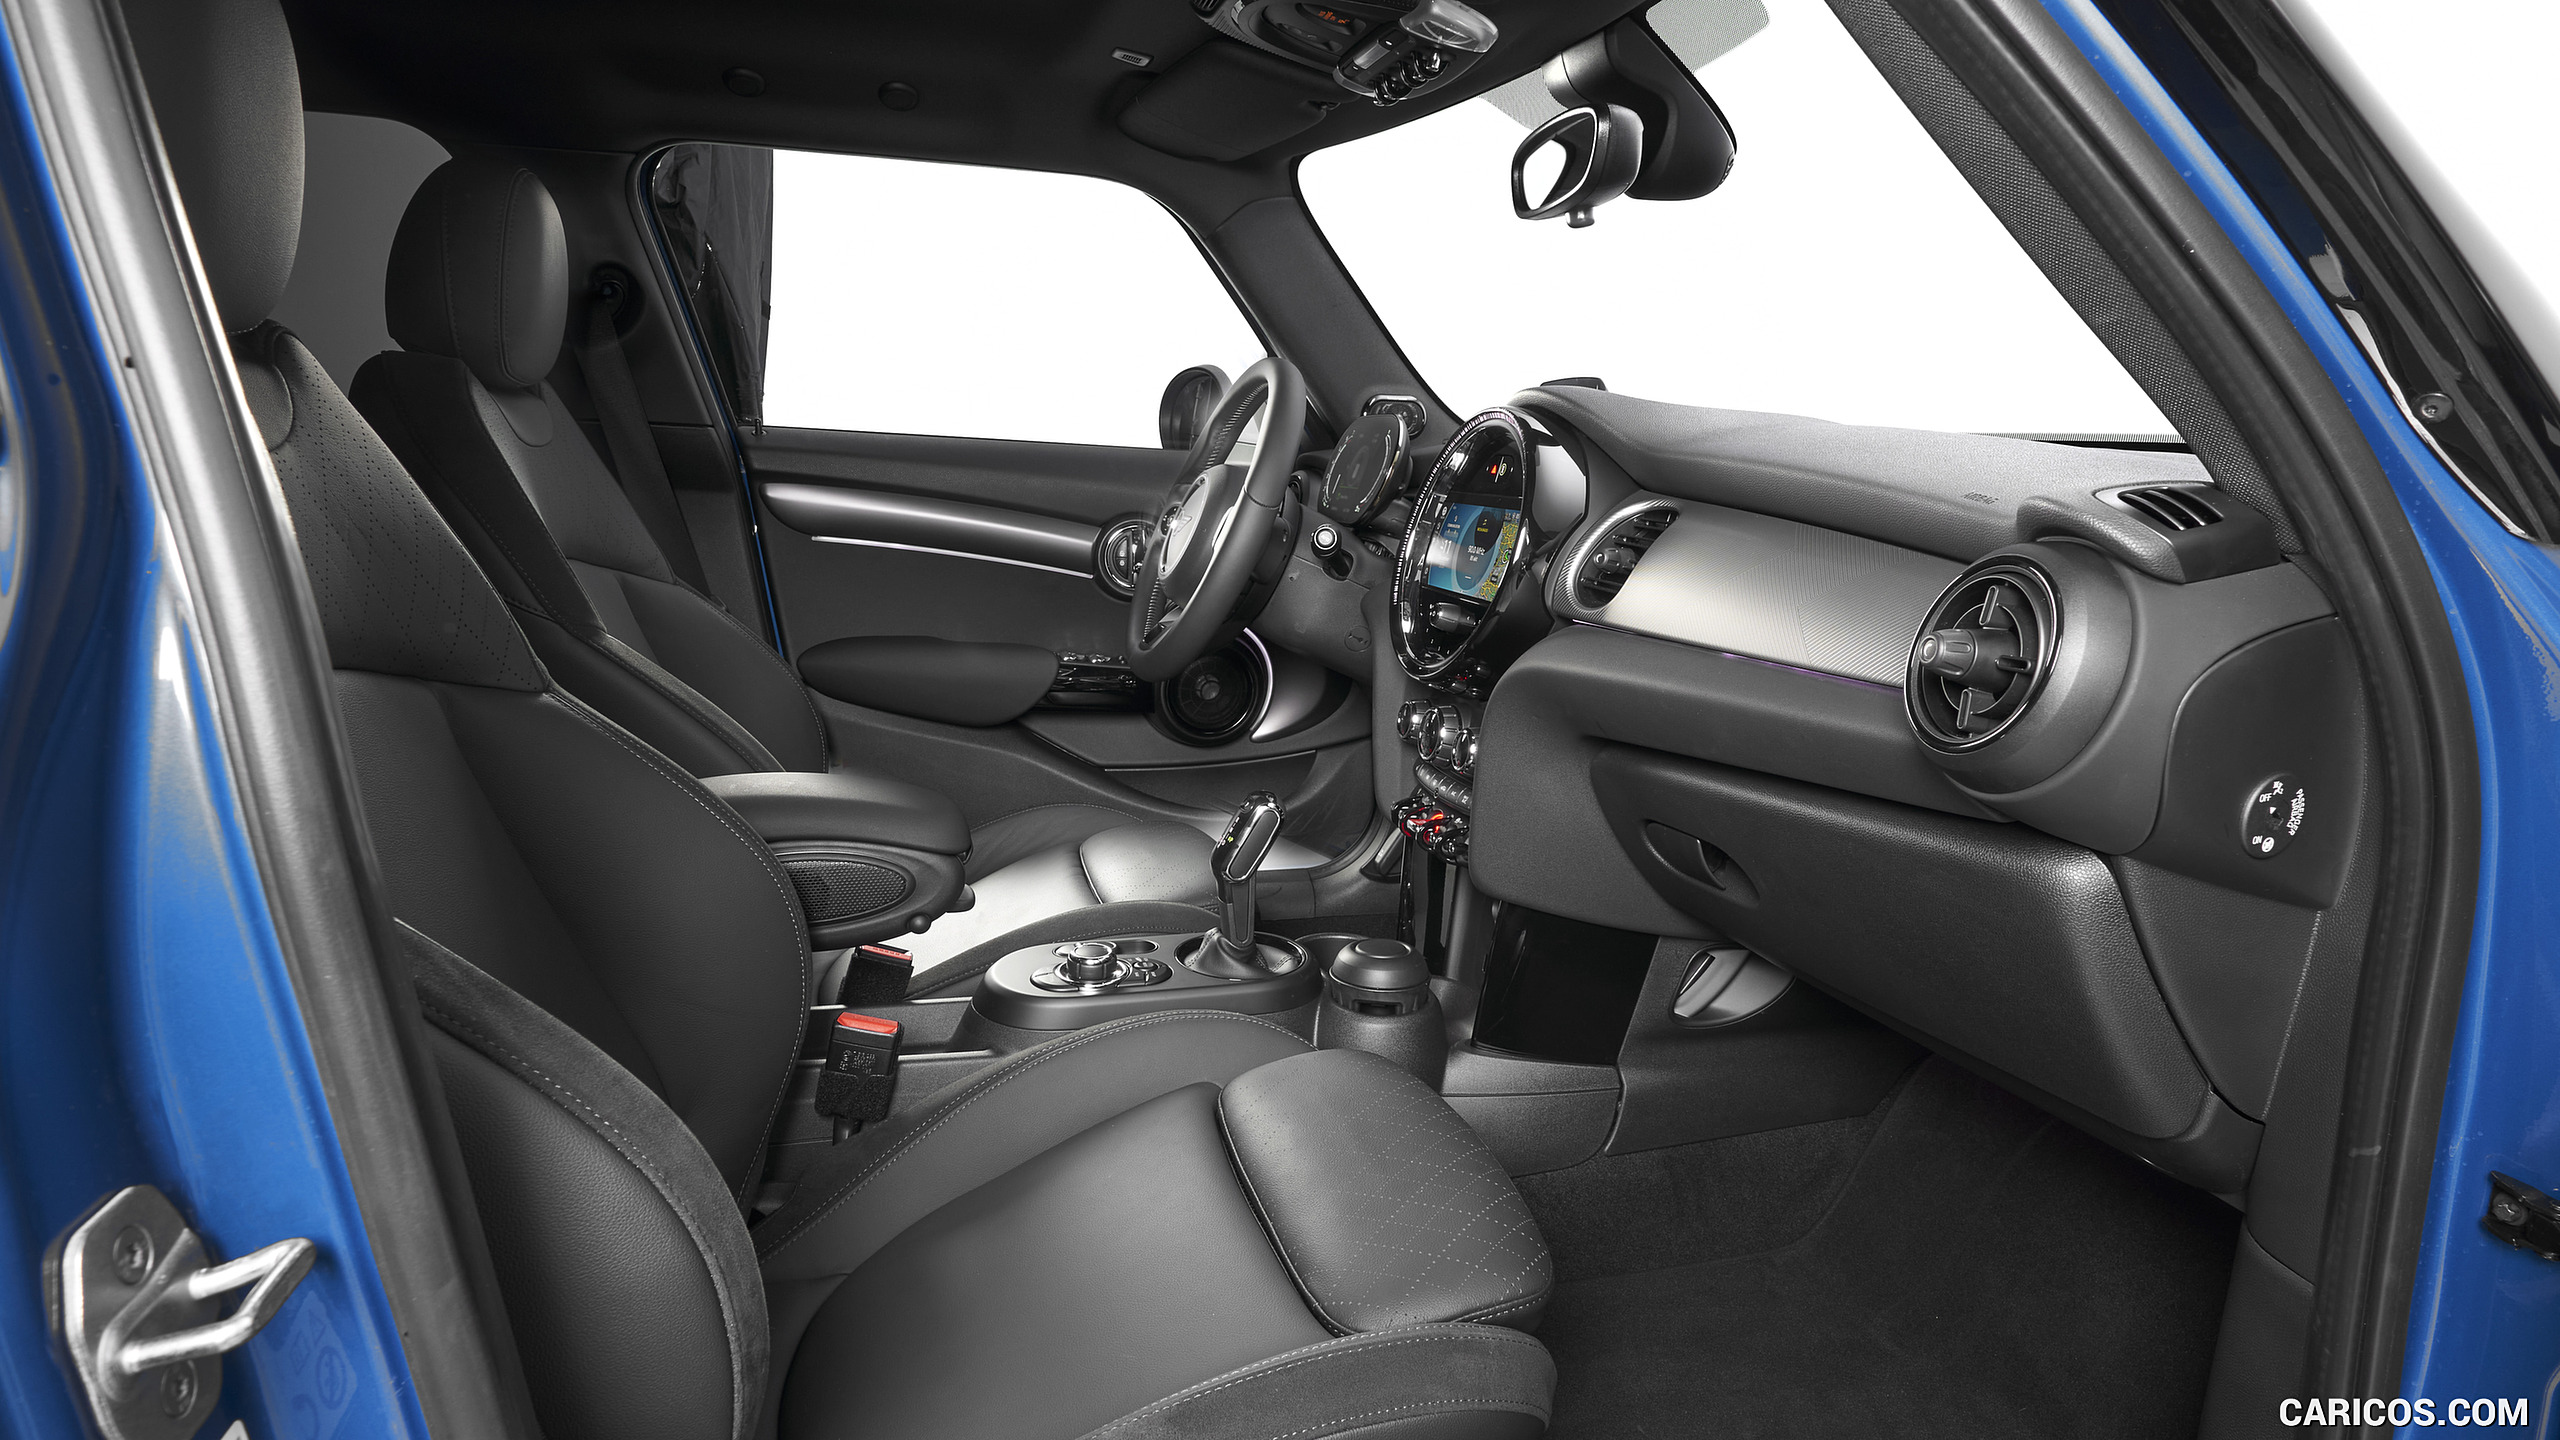 2022 MINI Cooper S Hardtop 4 Door - Interior, Front Seats, #32 of 33